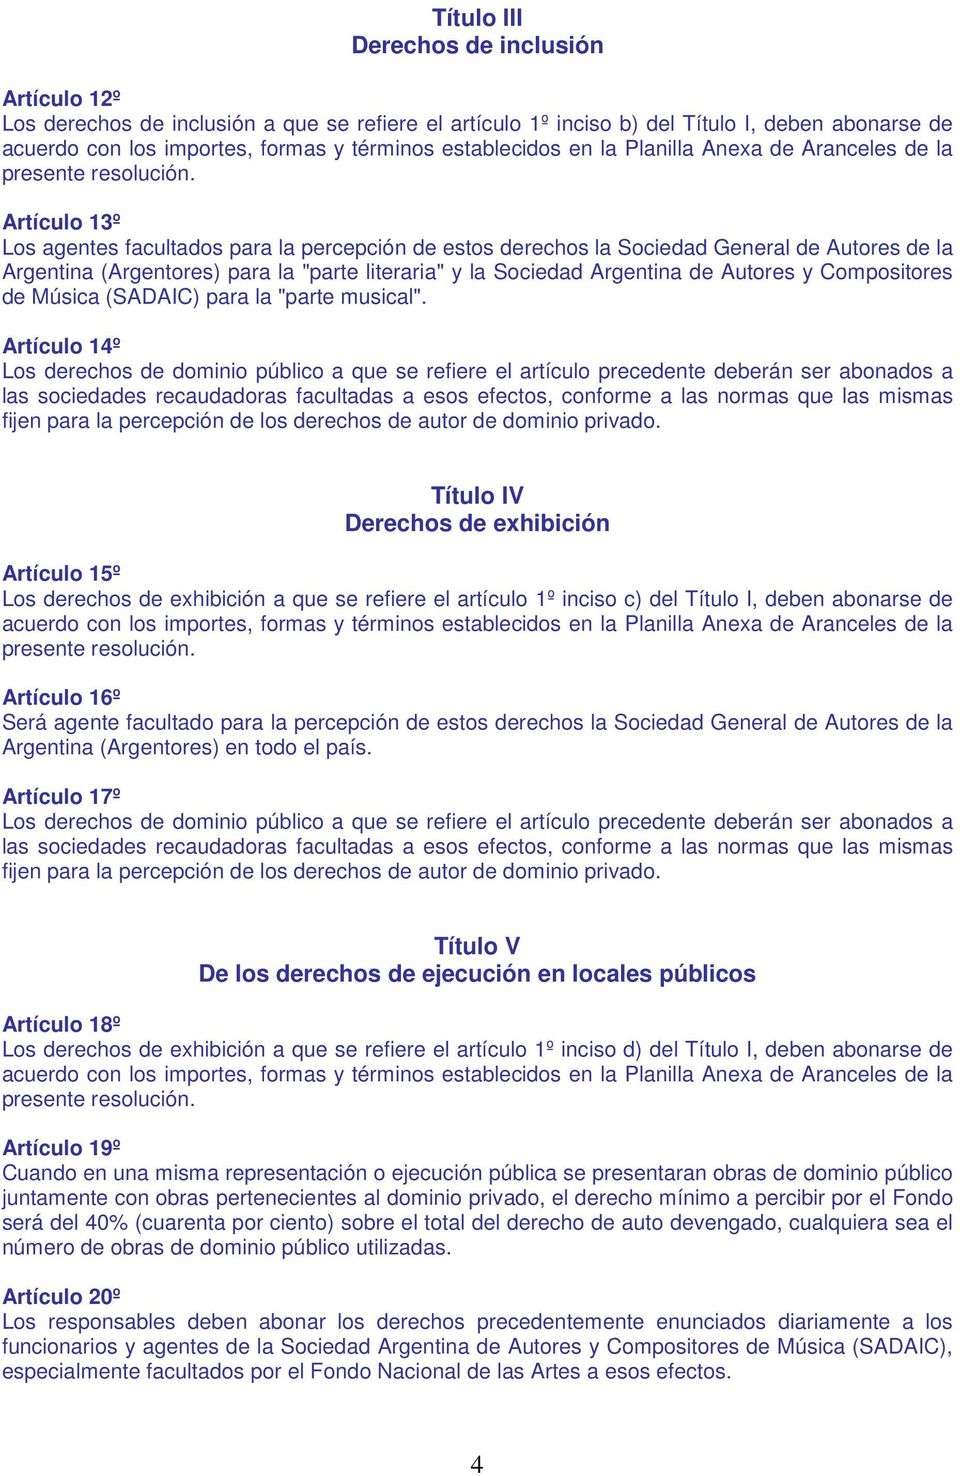 Artículo 13º Los agentes facultados para la percepción de estos derechos la Sociedad General de Autores de la Argentina (Argentores) para la "parte literaria" y la Sociedad Argentina de Autores y